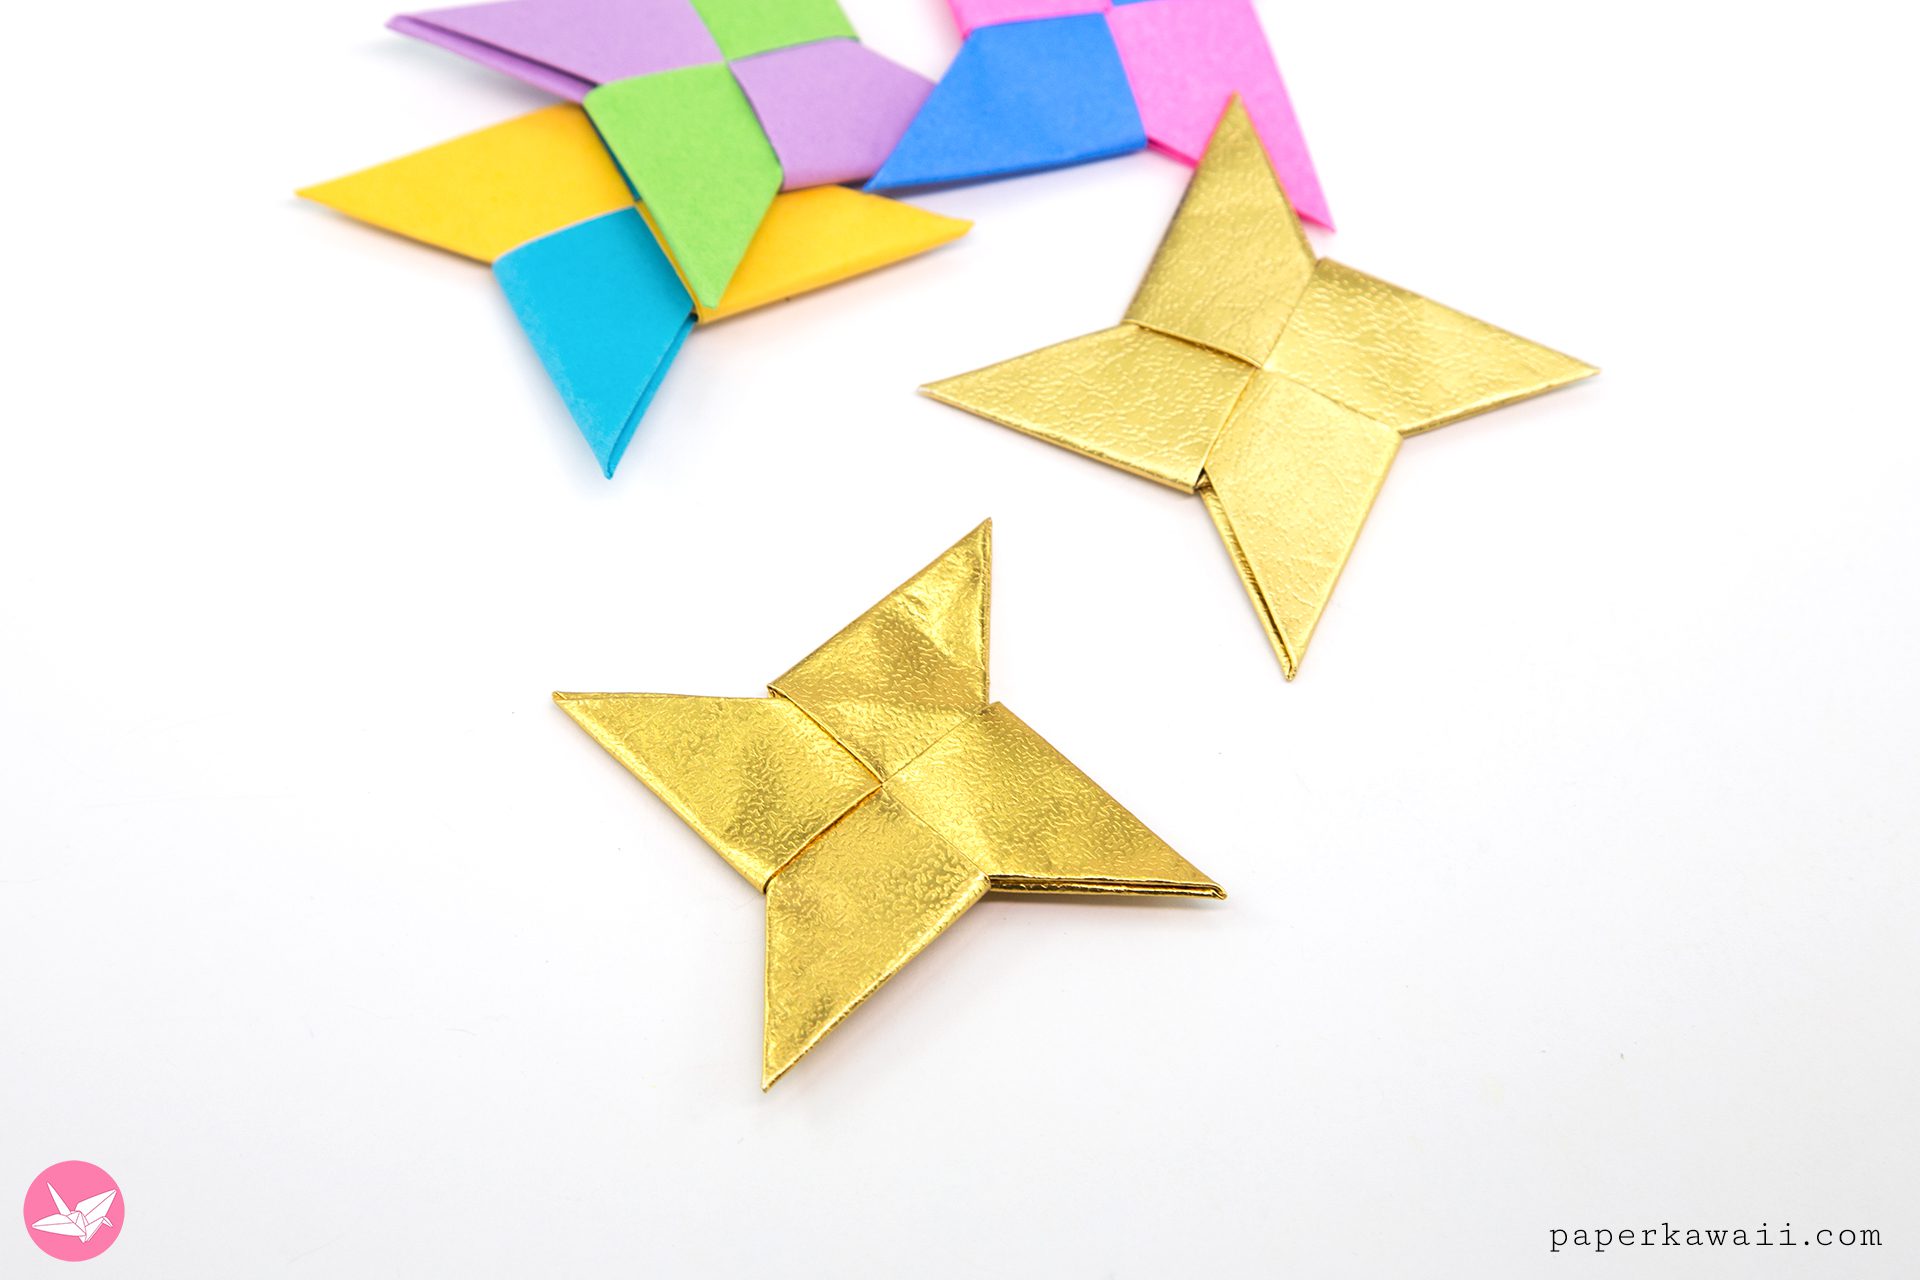 https://www.paperkawaii.com/wp-content/uploads/2018/11/origami-ninja-star-shuriken-paper-kawaii-05.jpg